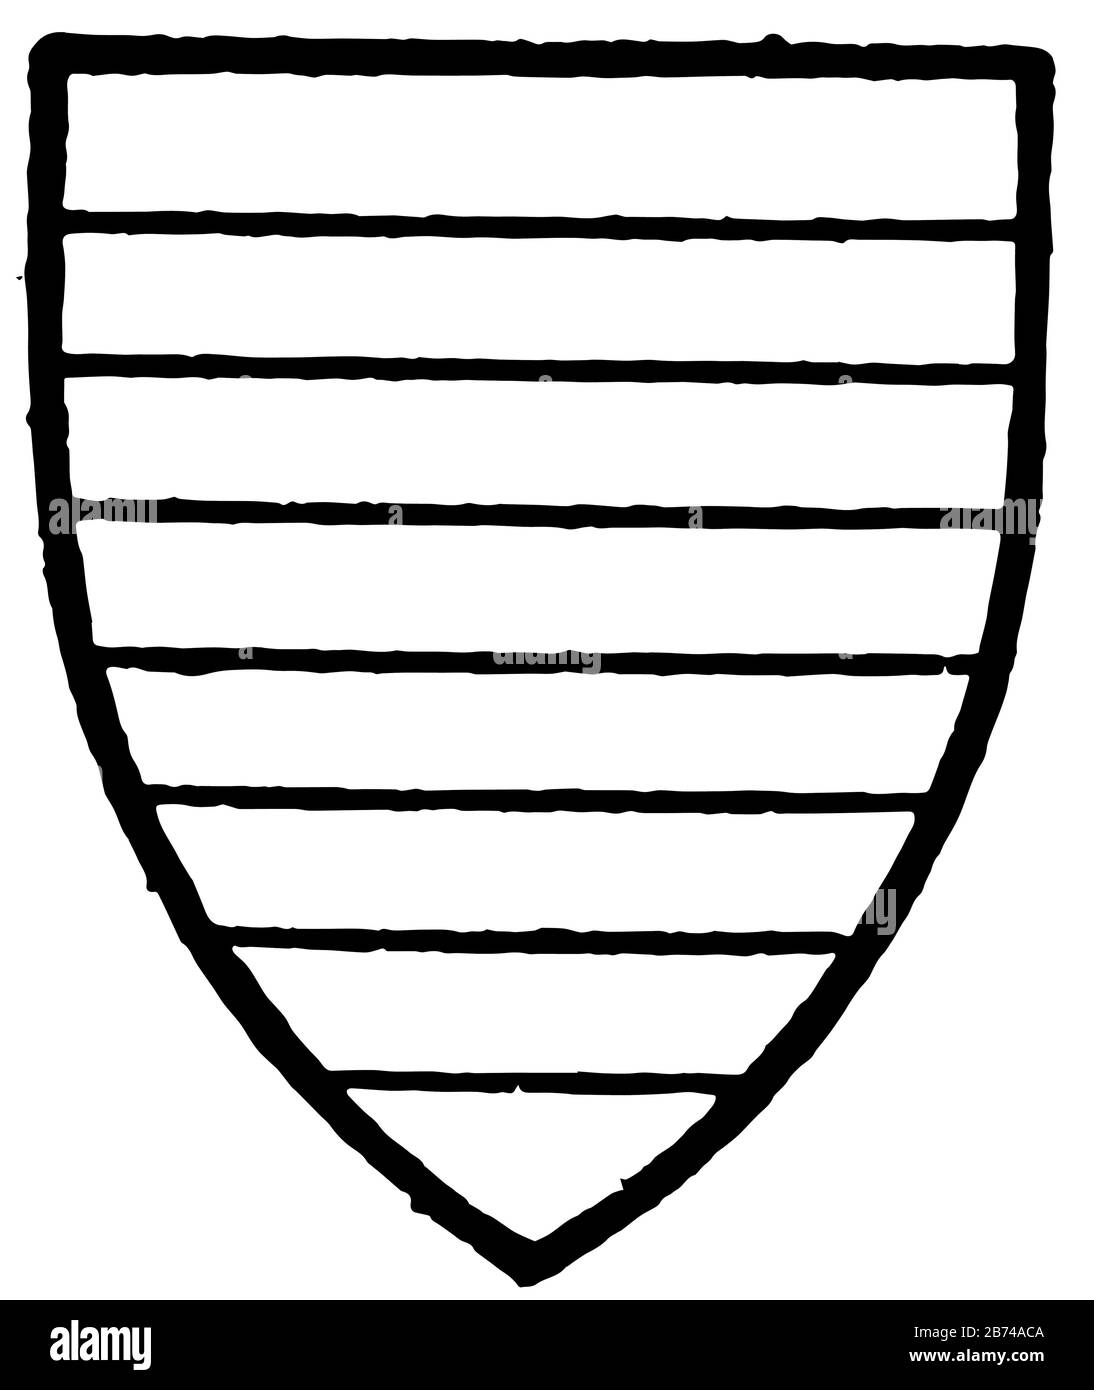 Fitzalan de Bedale è la parrocchia civile nel distretto di Hambleton e dello Yorkshire del Nord in Inghilterra, è gallows usato per eseguire e dividere ancora e. Illustrazione Vettoriale